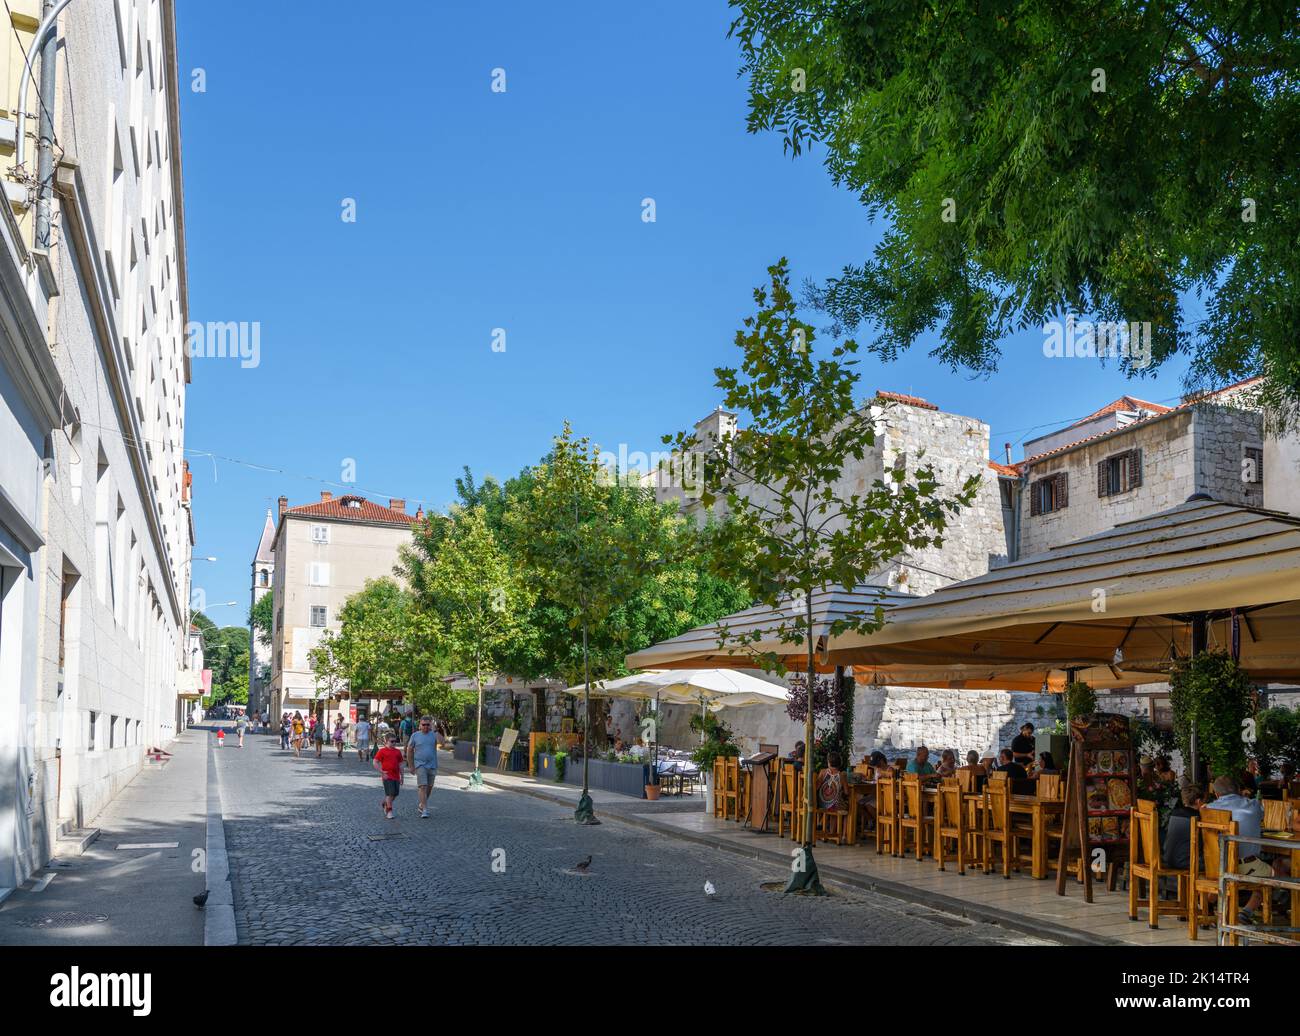 Café und Bar auf der Ulica Kralja Tomislava, einer Straße in der Altstadt von Split, Kroatien Stockfoto